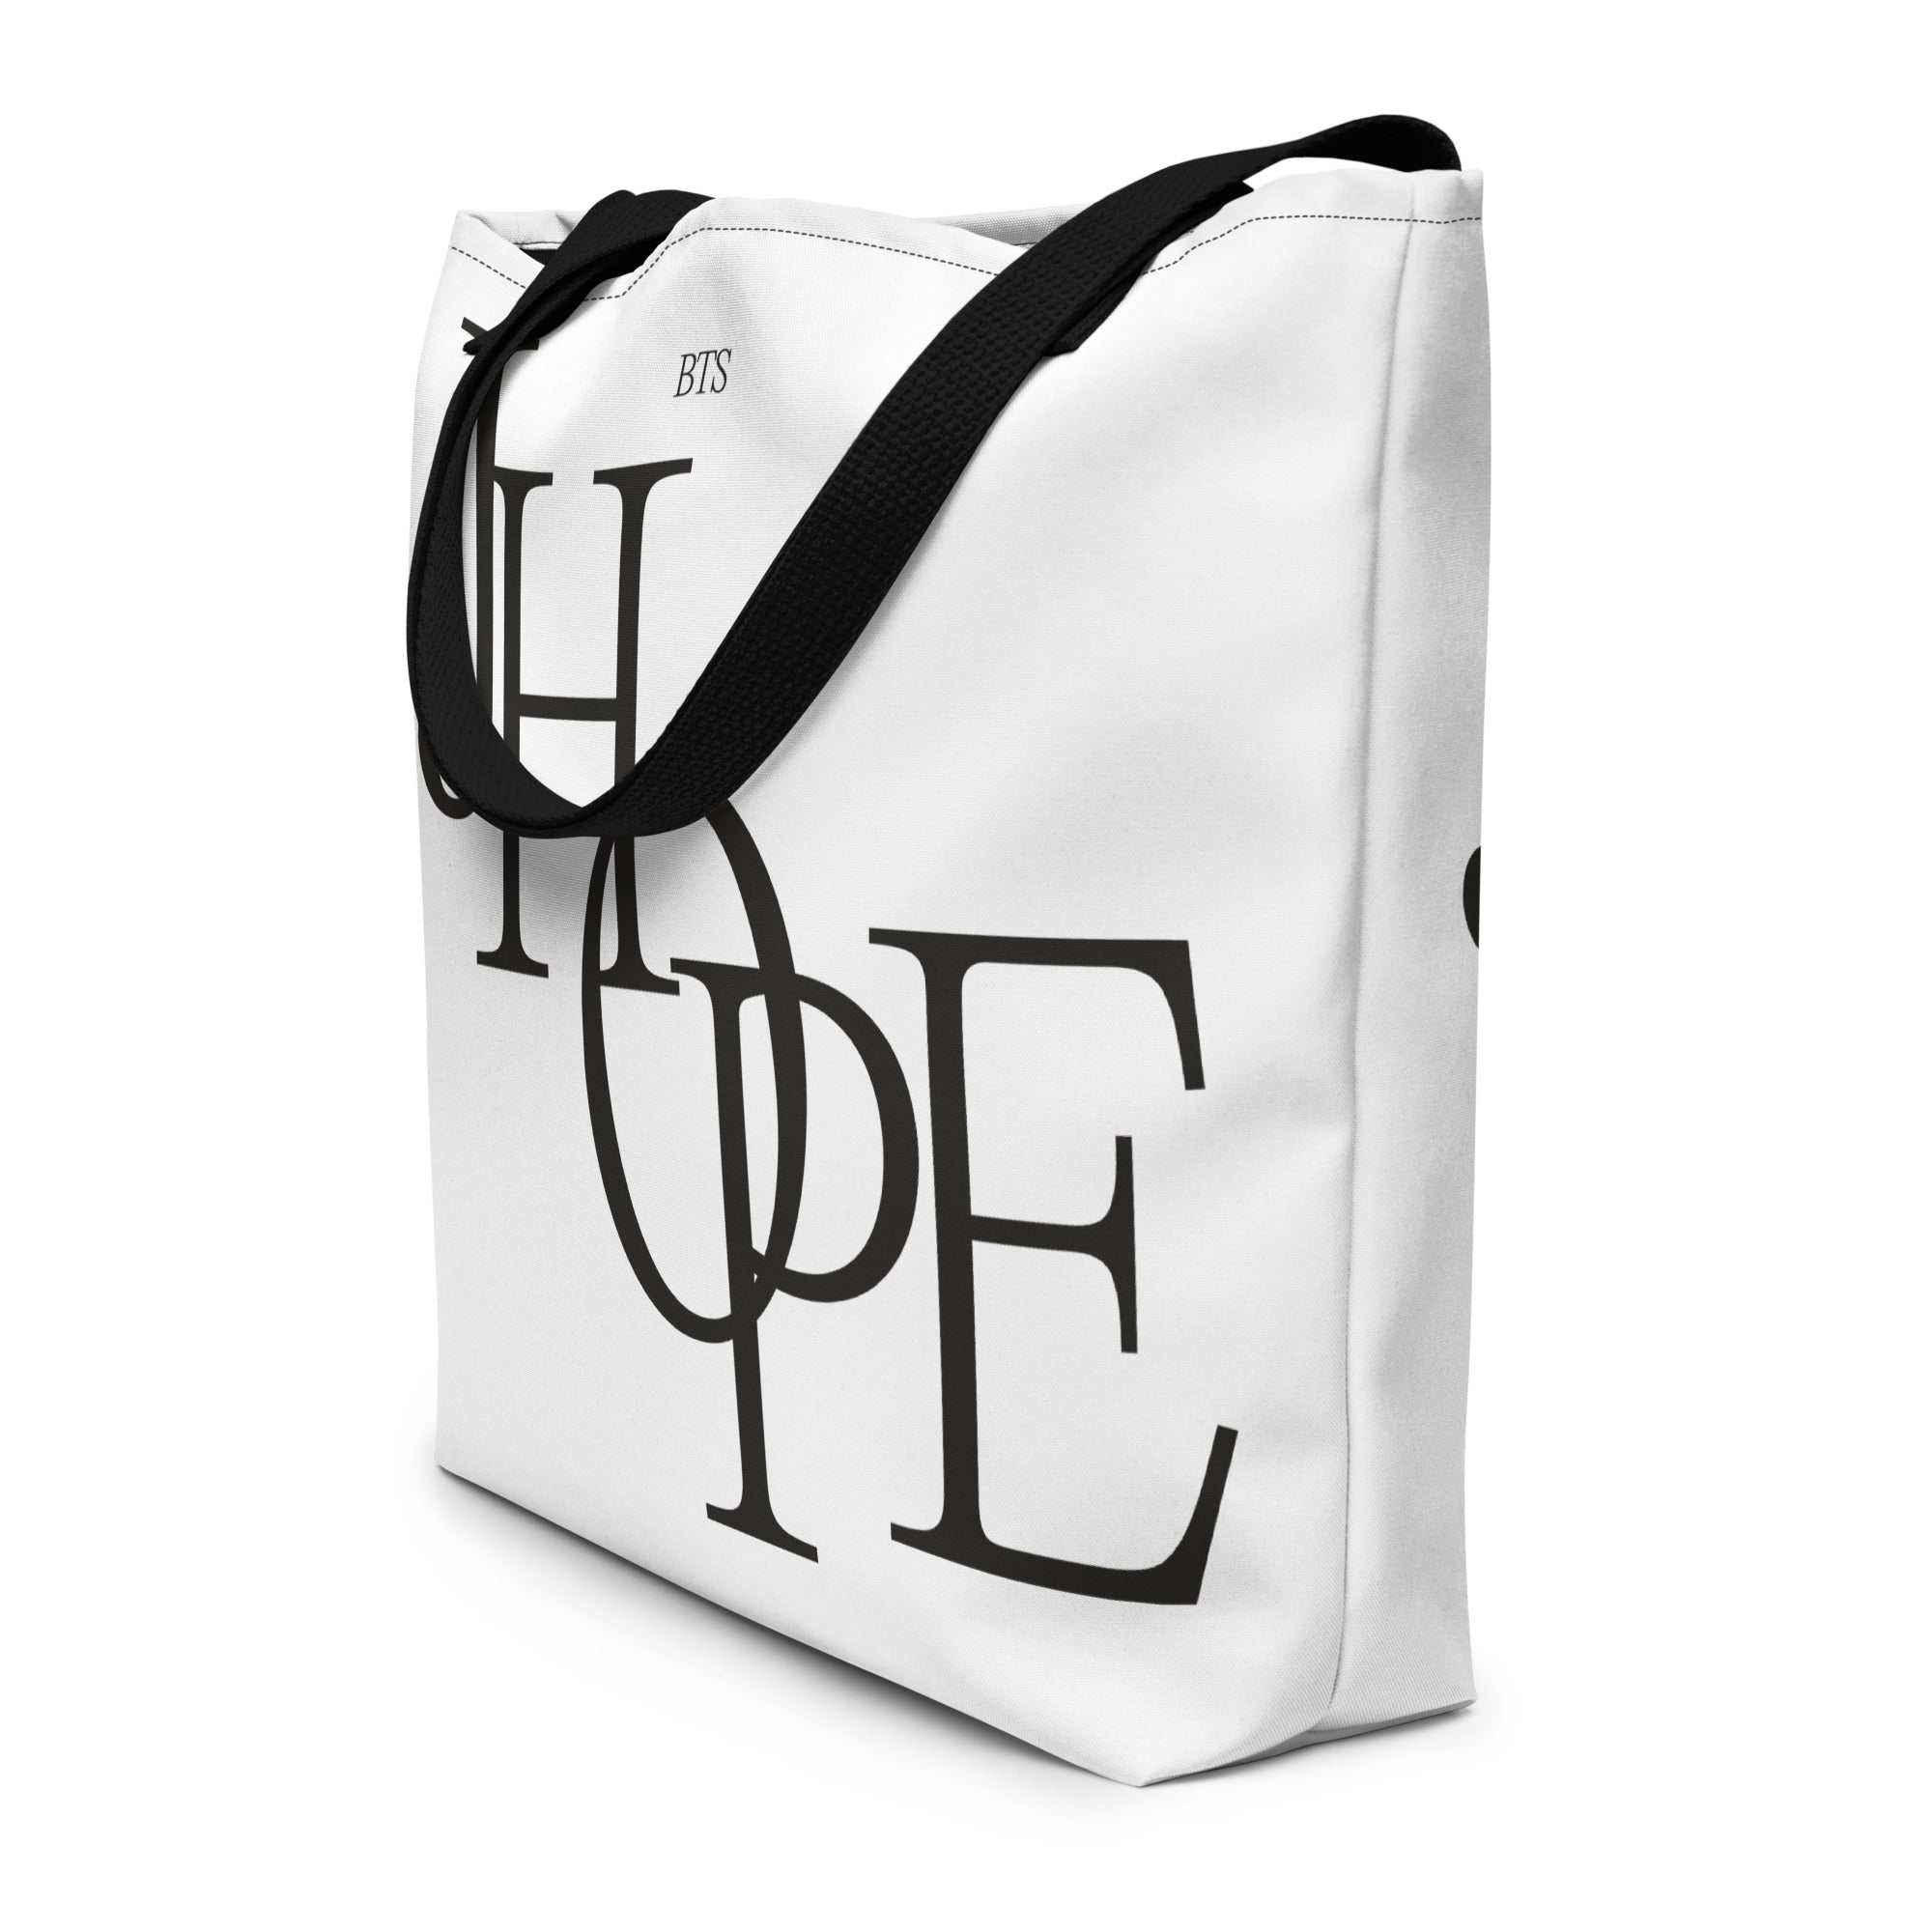 J Hope Weekender Tote Bag by Ajri Kinanti - Pixels